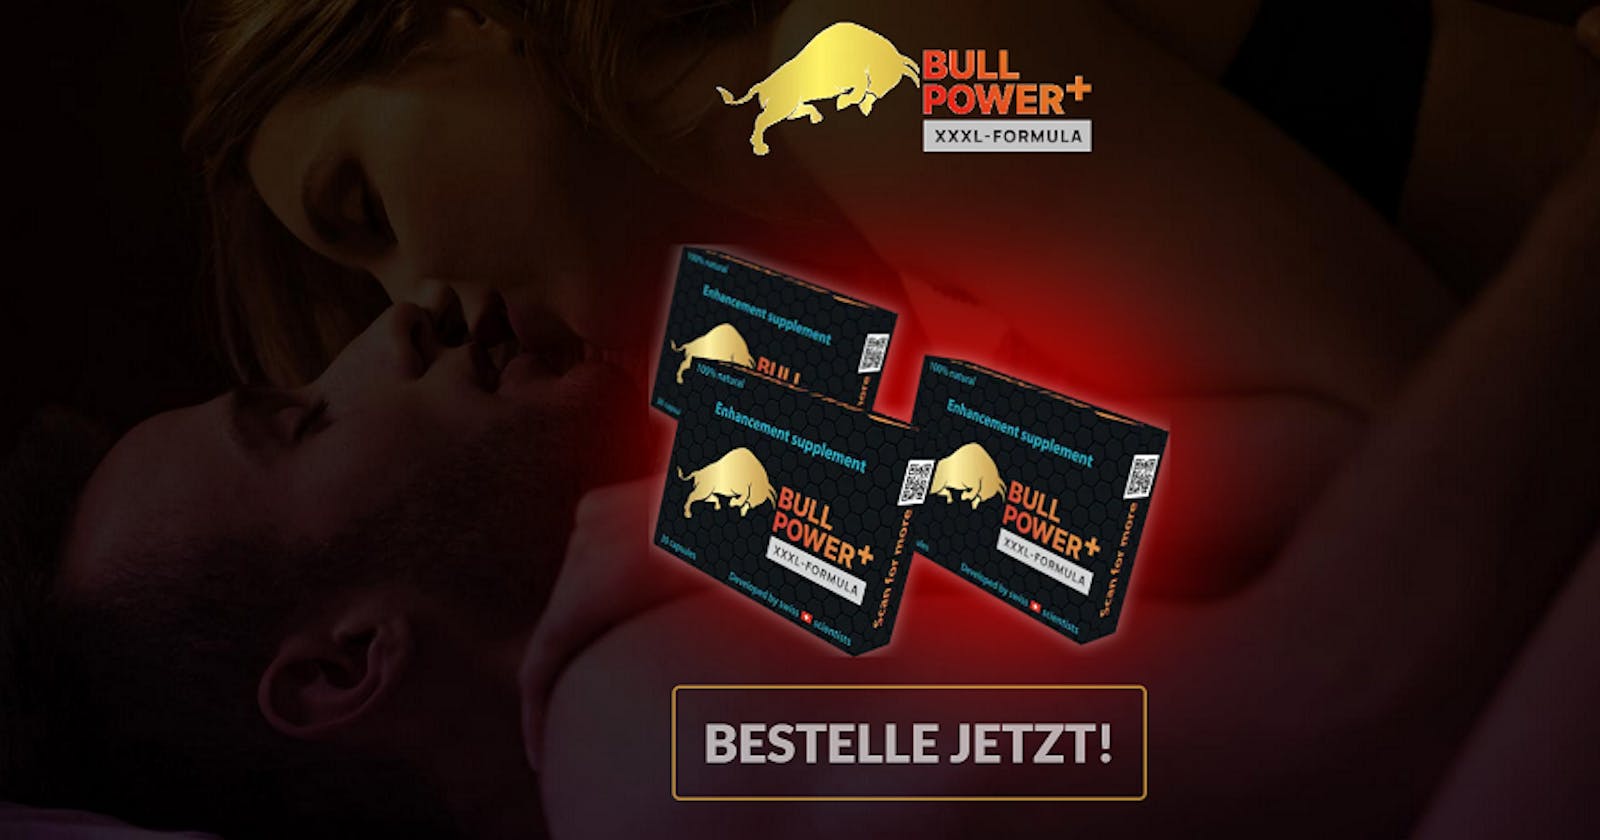 Bull Power Plus Male Enhancement (Bullpower+) Erhalten Sie Härtere Und Intensivere Orgasmen